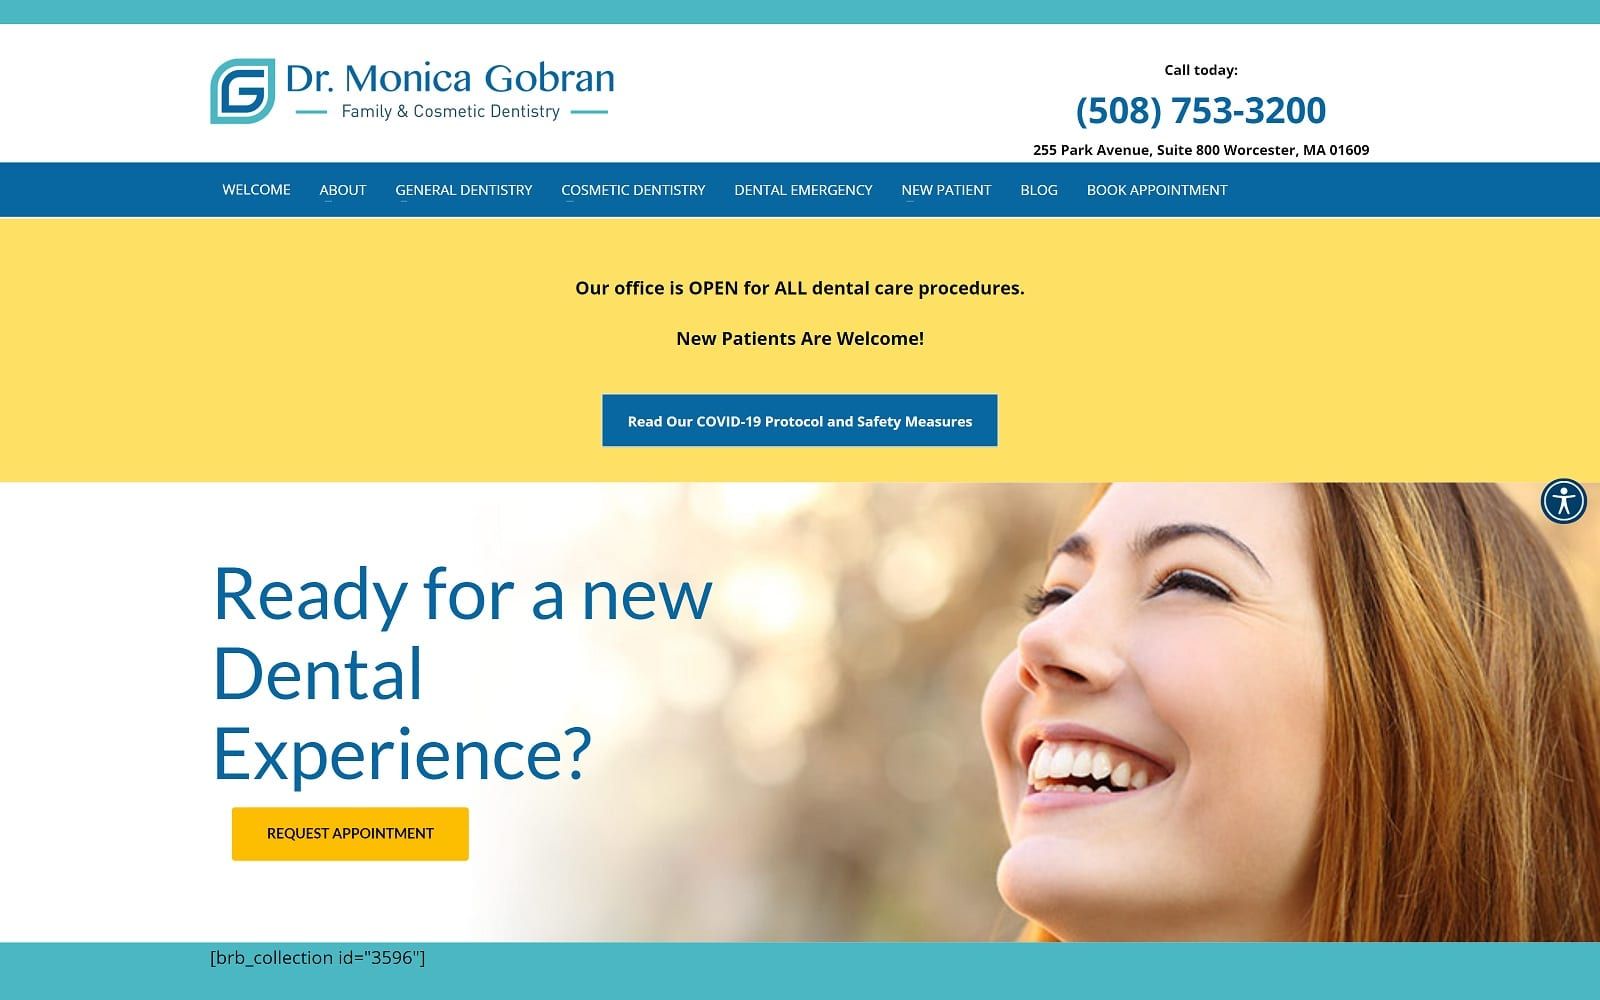 The screenshot of dr. Monica gobran drgobran. Com website